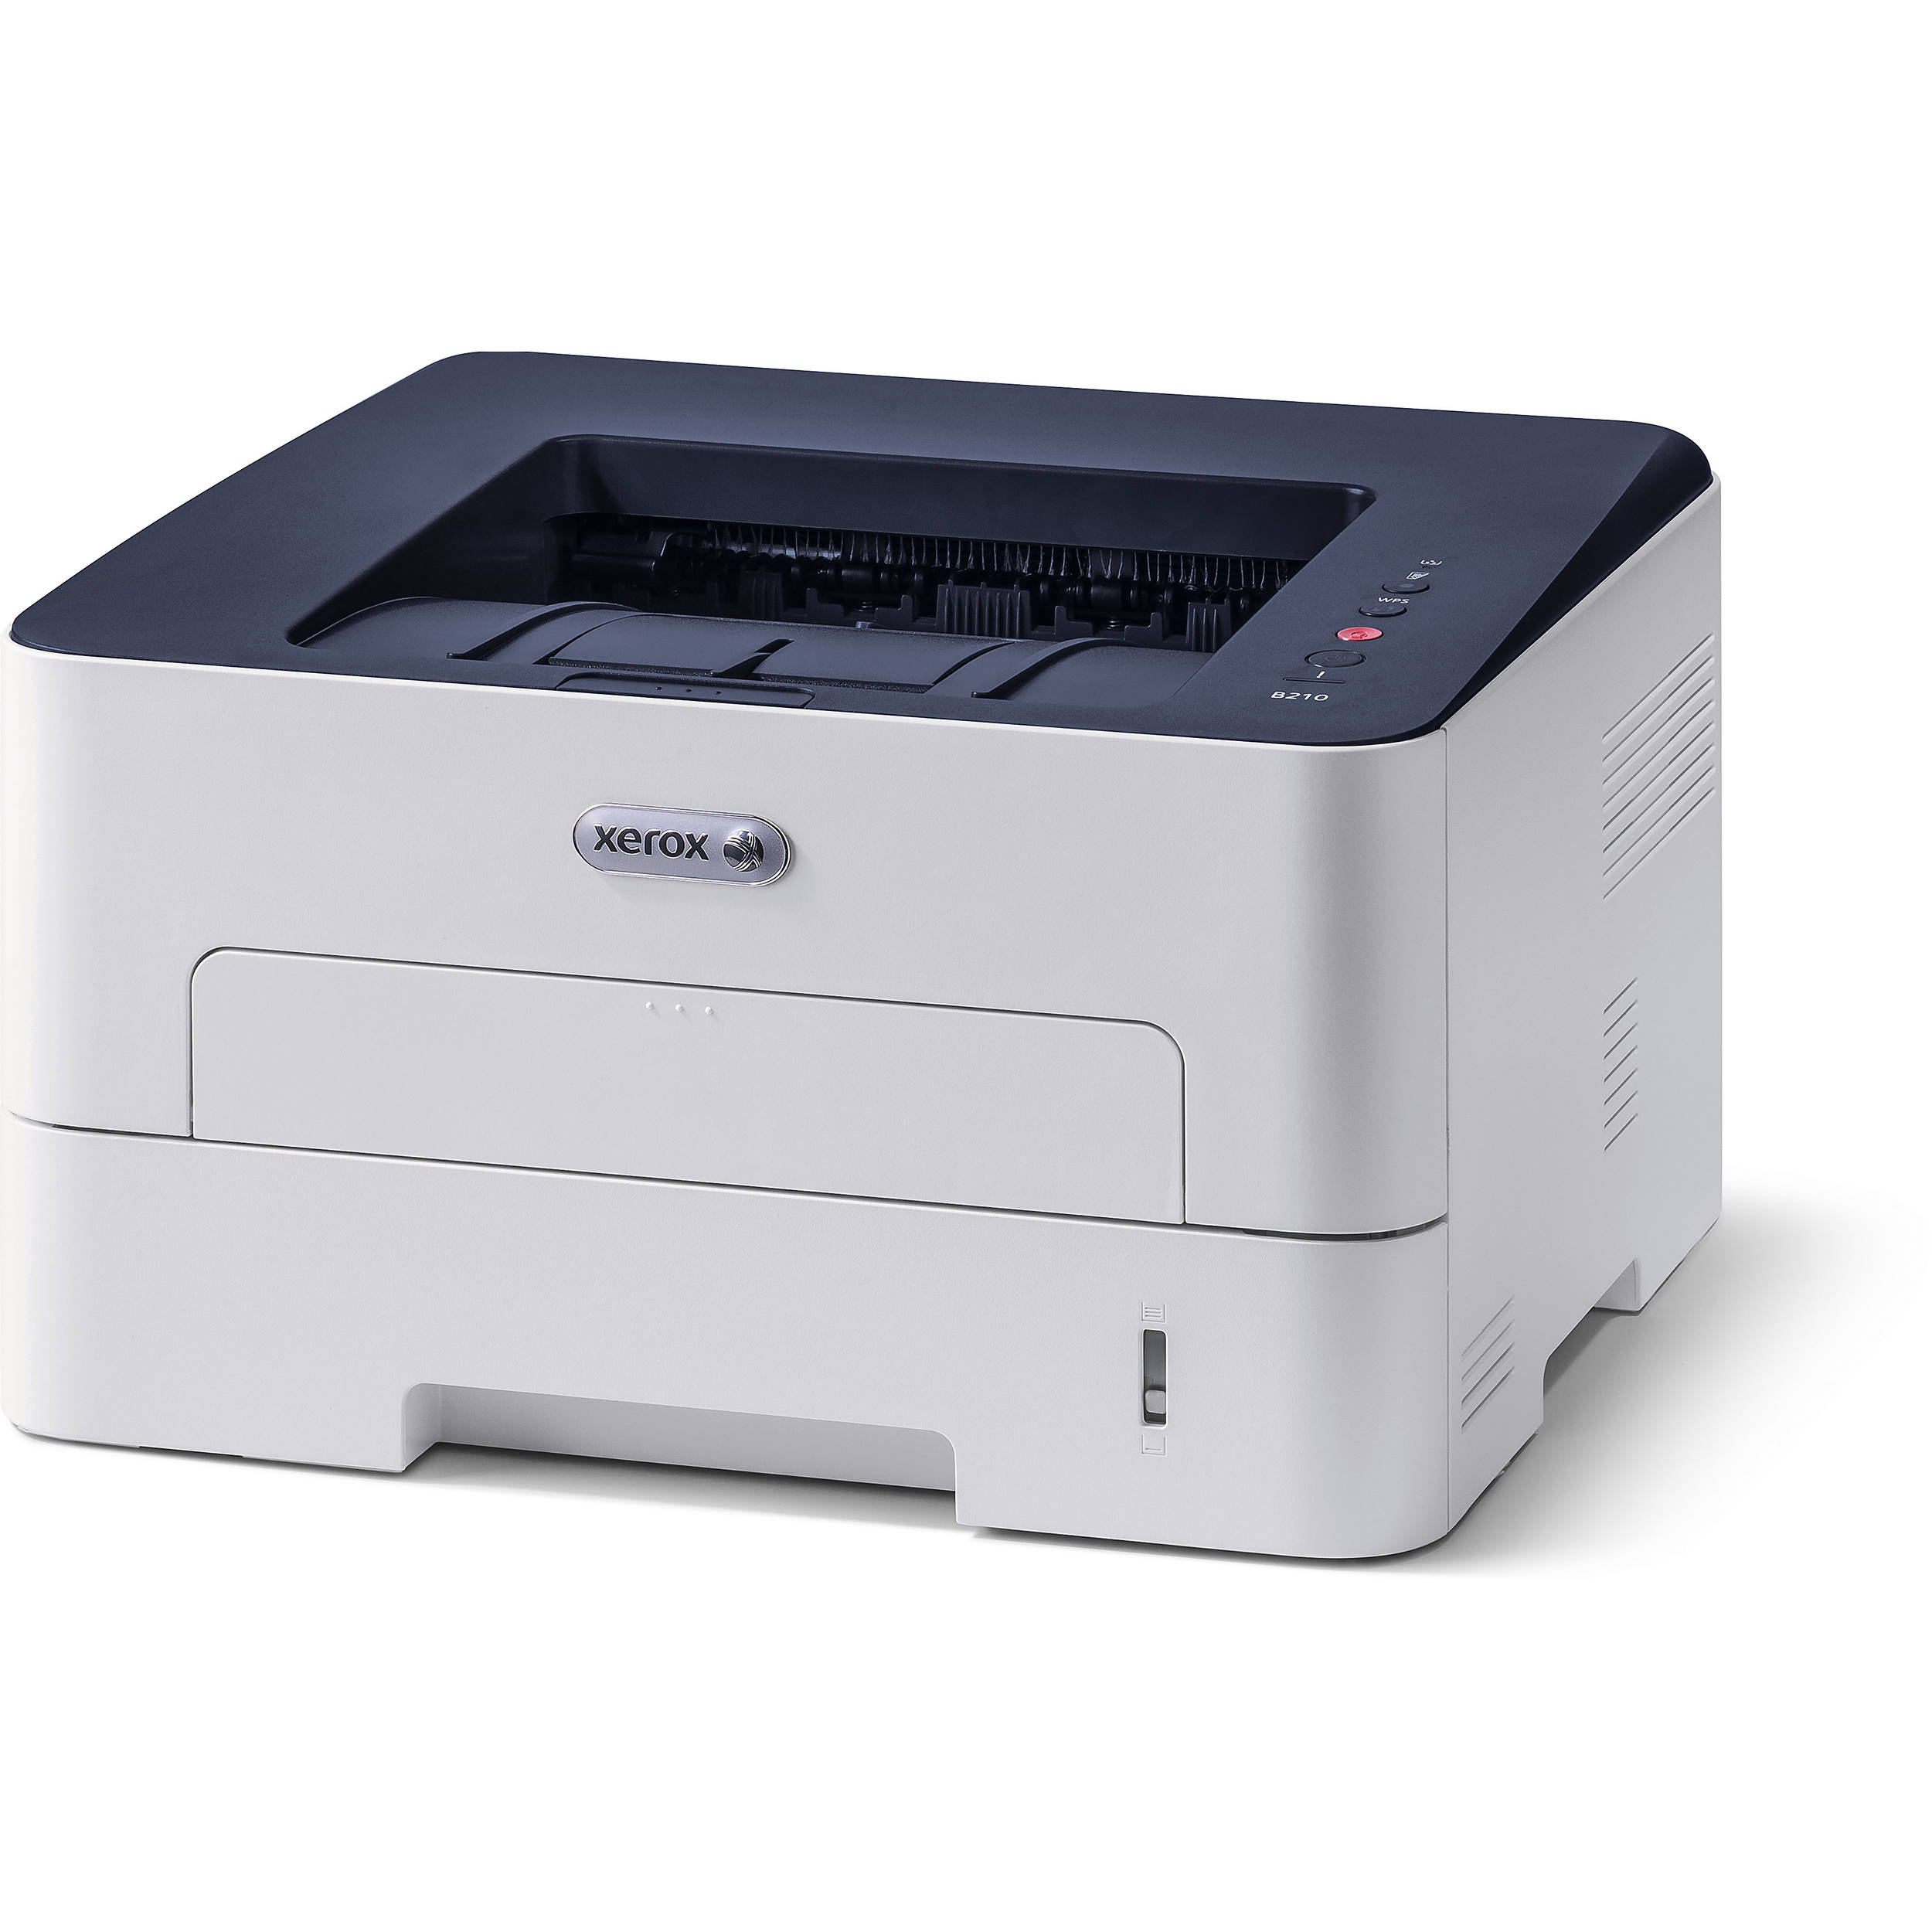 Лазерные принтеры обзор. Принтер лазерный Xerox Phaser 3020bi. Принтер Xerox b210dni. Принтер Xerox Phaser 3052ni. Принтер Xerox b210 (b210dni).